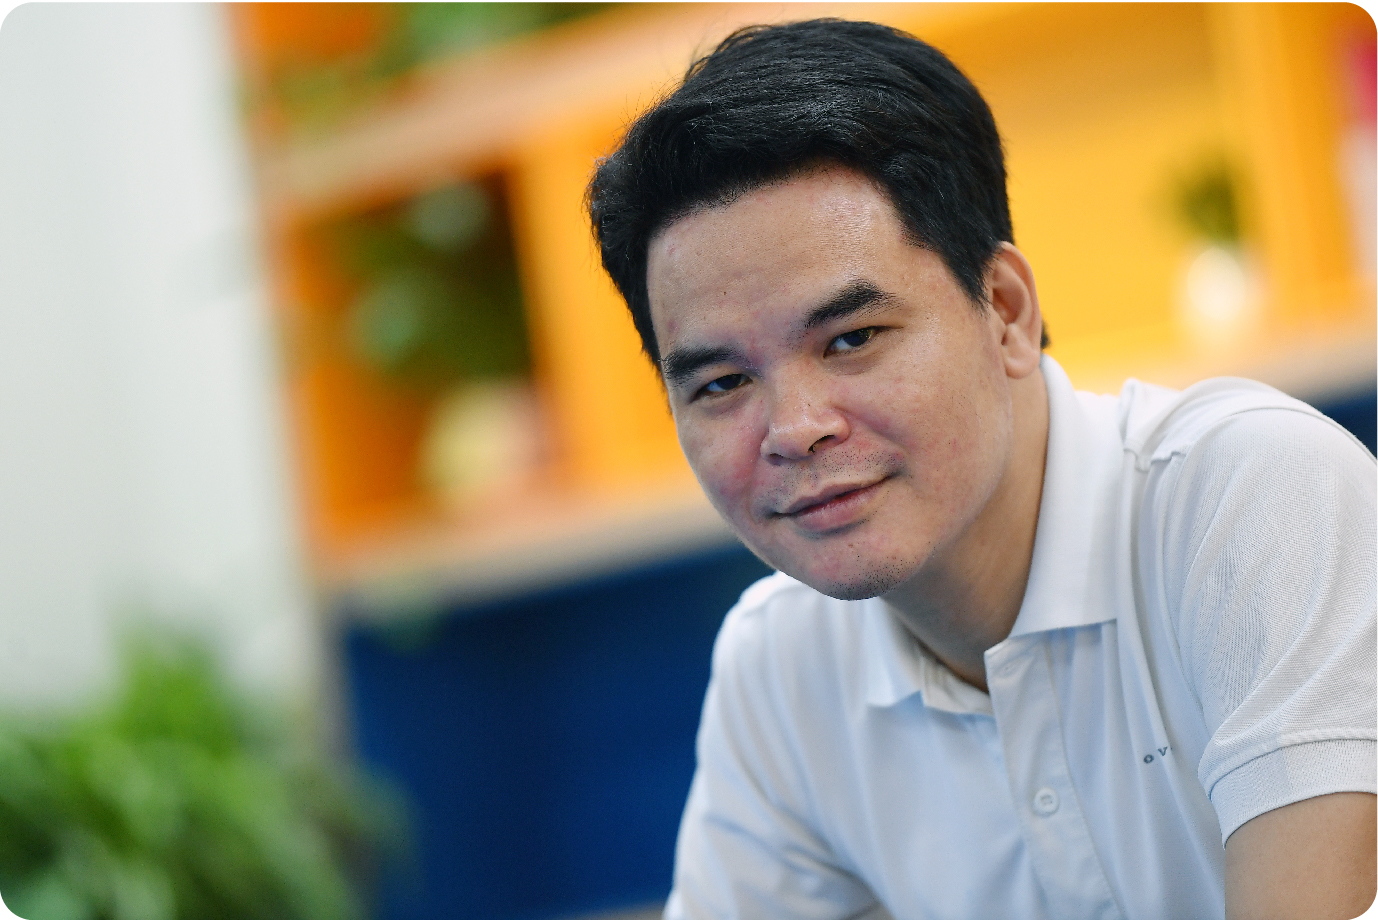 Cựu Giám đốc Digital của Viettel Telecom khởi nghiệp, lập nên Edtech dạy tiếng Anh số 1 Việt Nam: Tìm thấy cơ hội khi về quê, mơ thành ‘cận kỳ lân’ năm 2025 - Ảnh 7.